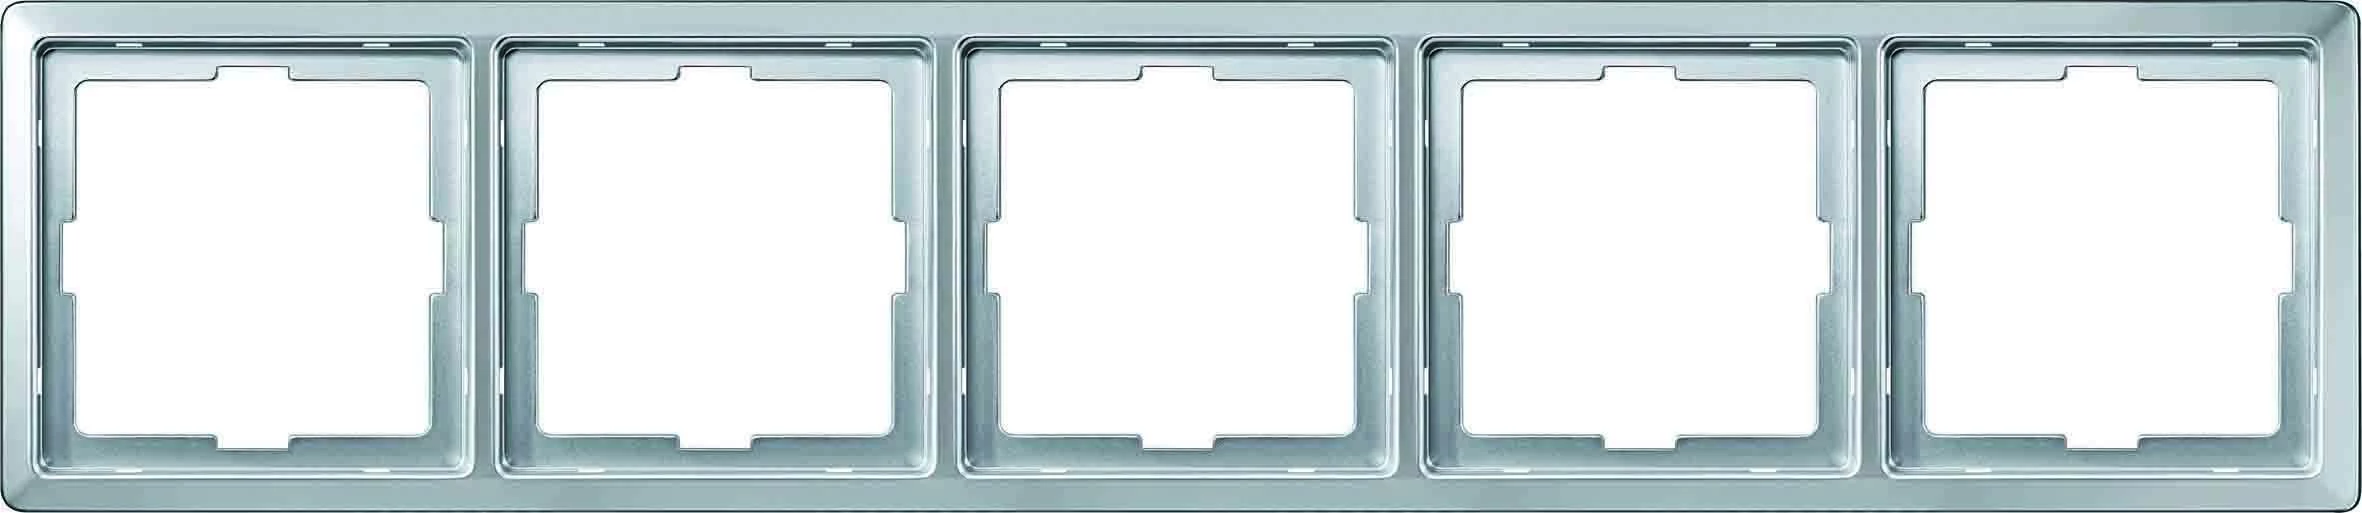  артикул MTN481560 название Рамка 5-ая (пятерная), цвет Алюминий, Artec